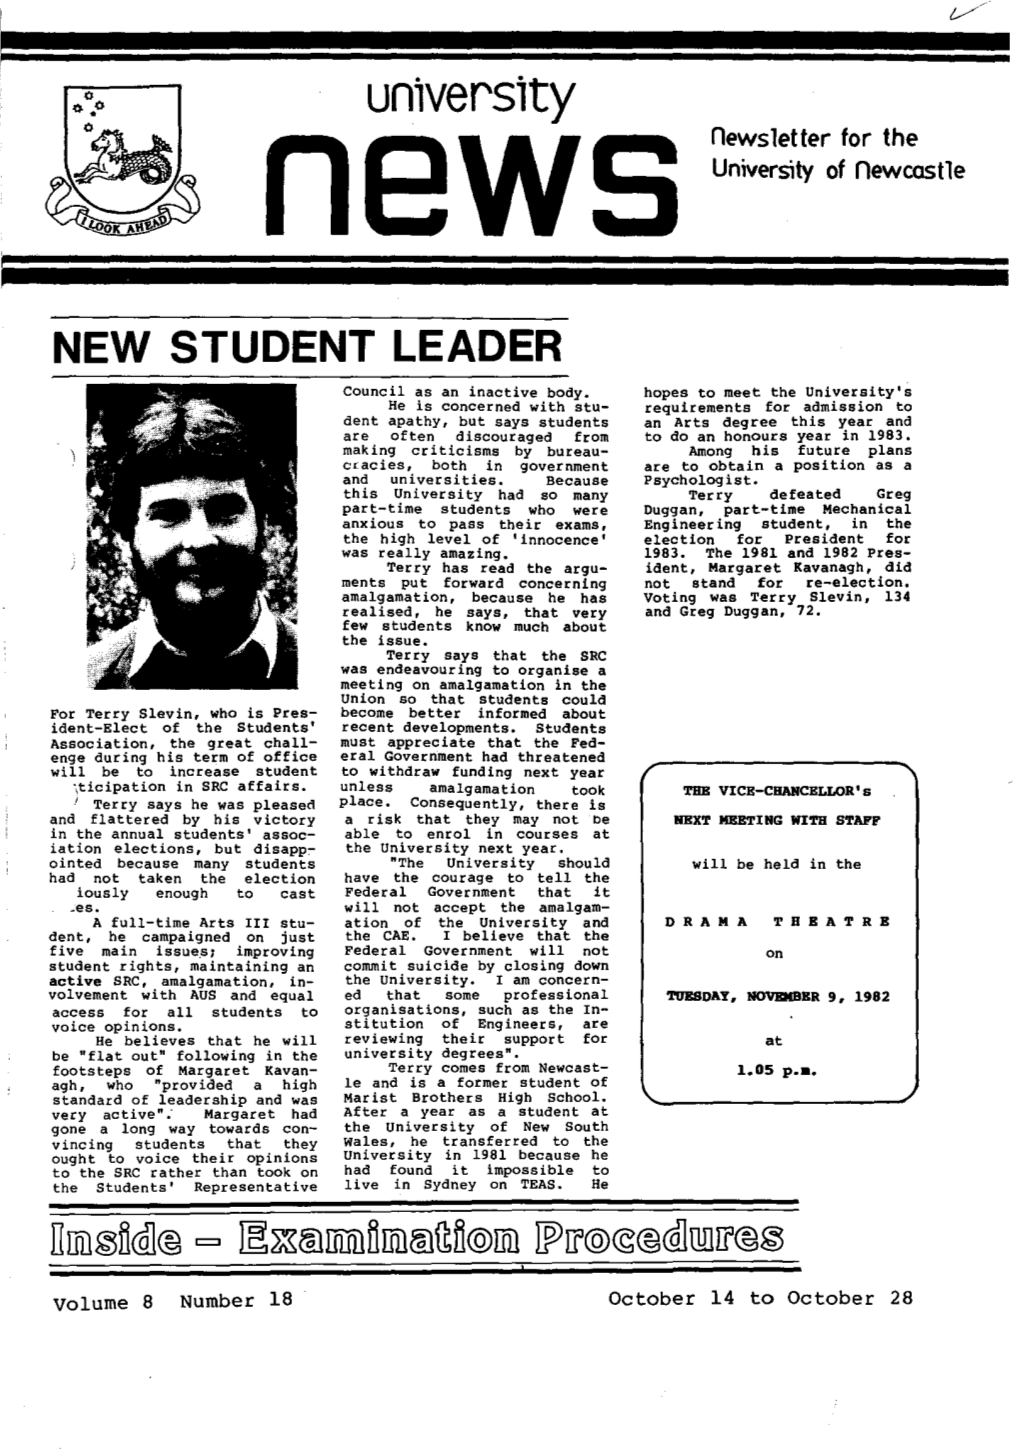 The University News, Vol. 8, No. 18, October 14-28, 1982